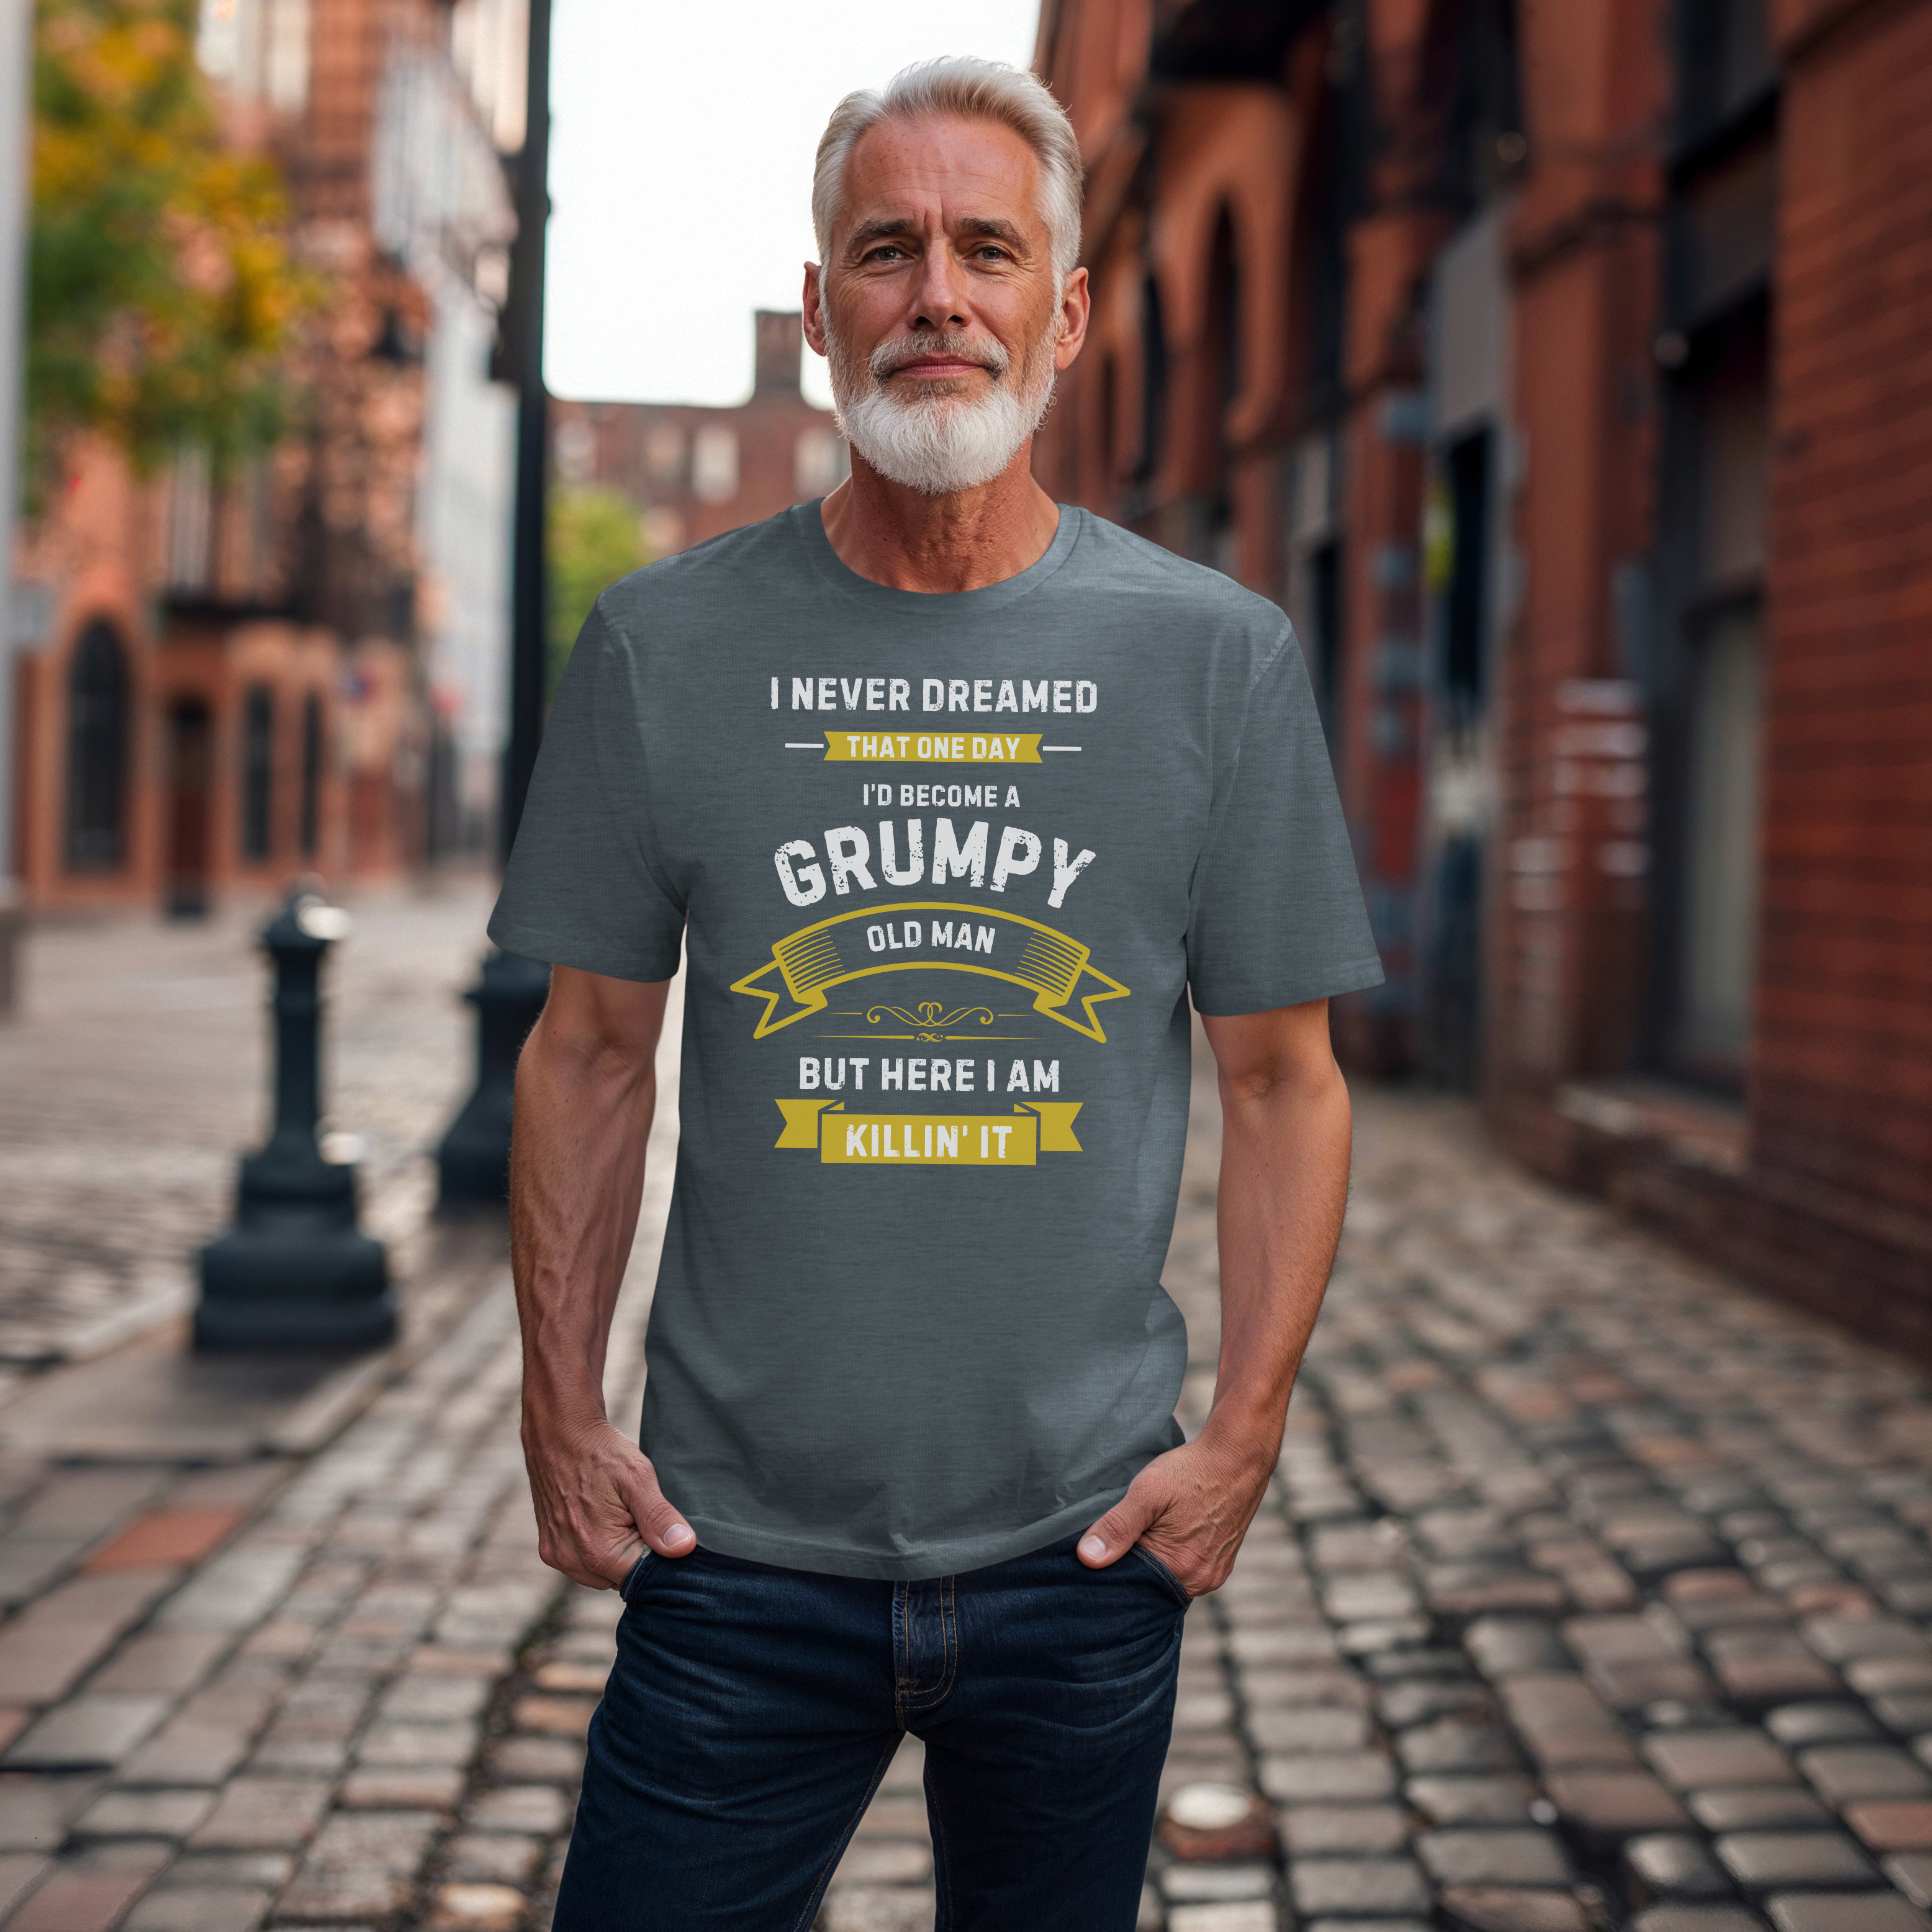 Grumpy Old Man Tee - Classic Comical Shirt